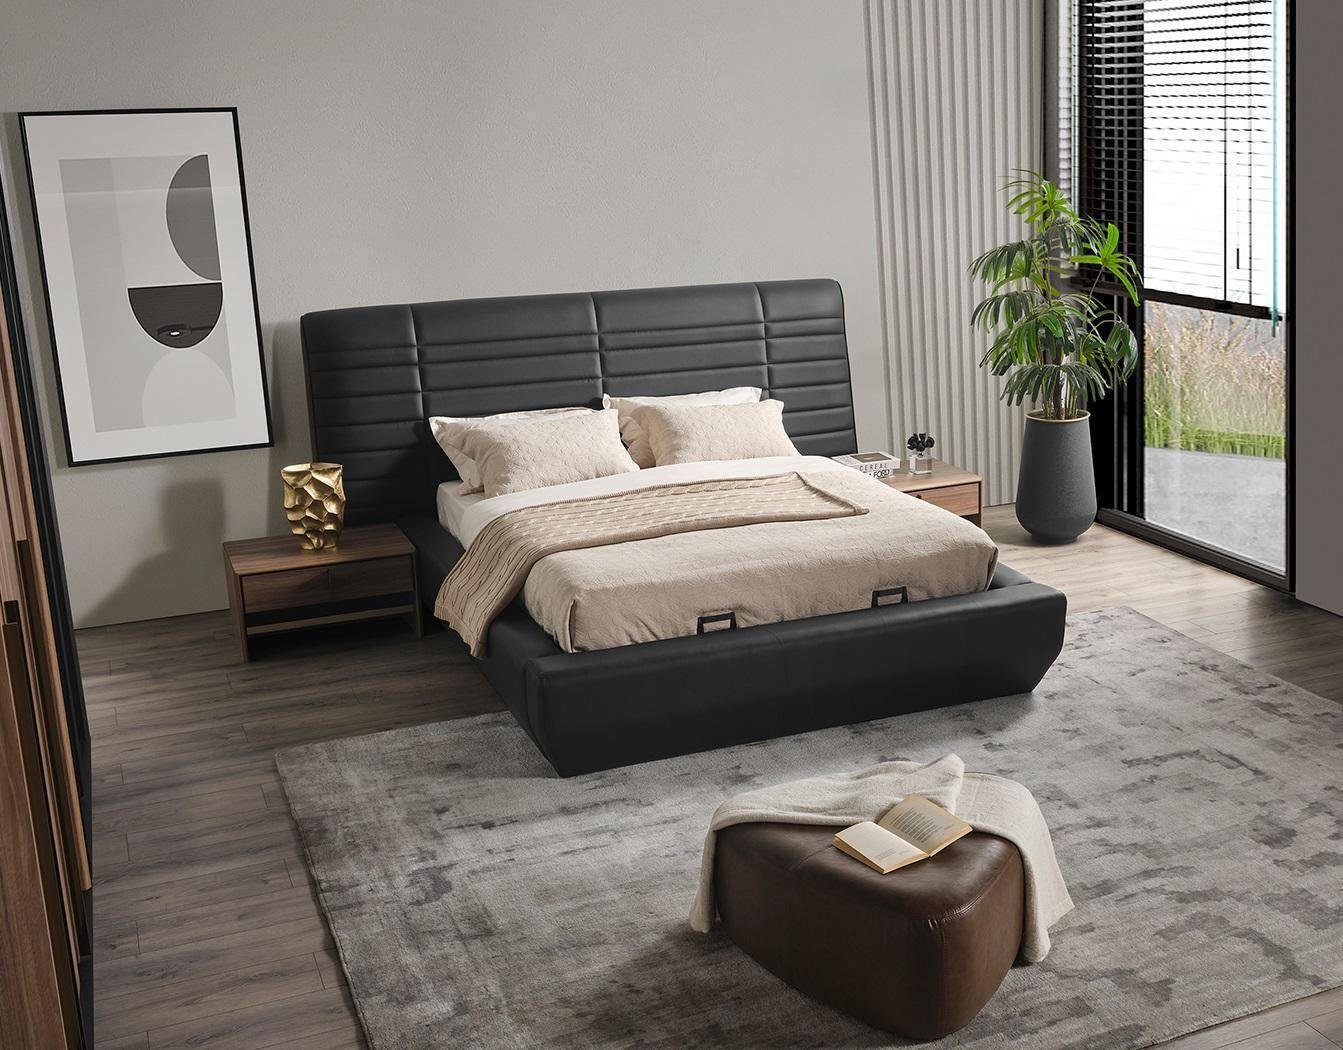 JVmoebel Schlafzimmer-Set Schlafzimmer Set Bett 2x Nachttische schwarz Luxus neu 3tlg Design, Made In Europe | Komplett-Jugendzimmer